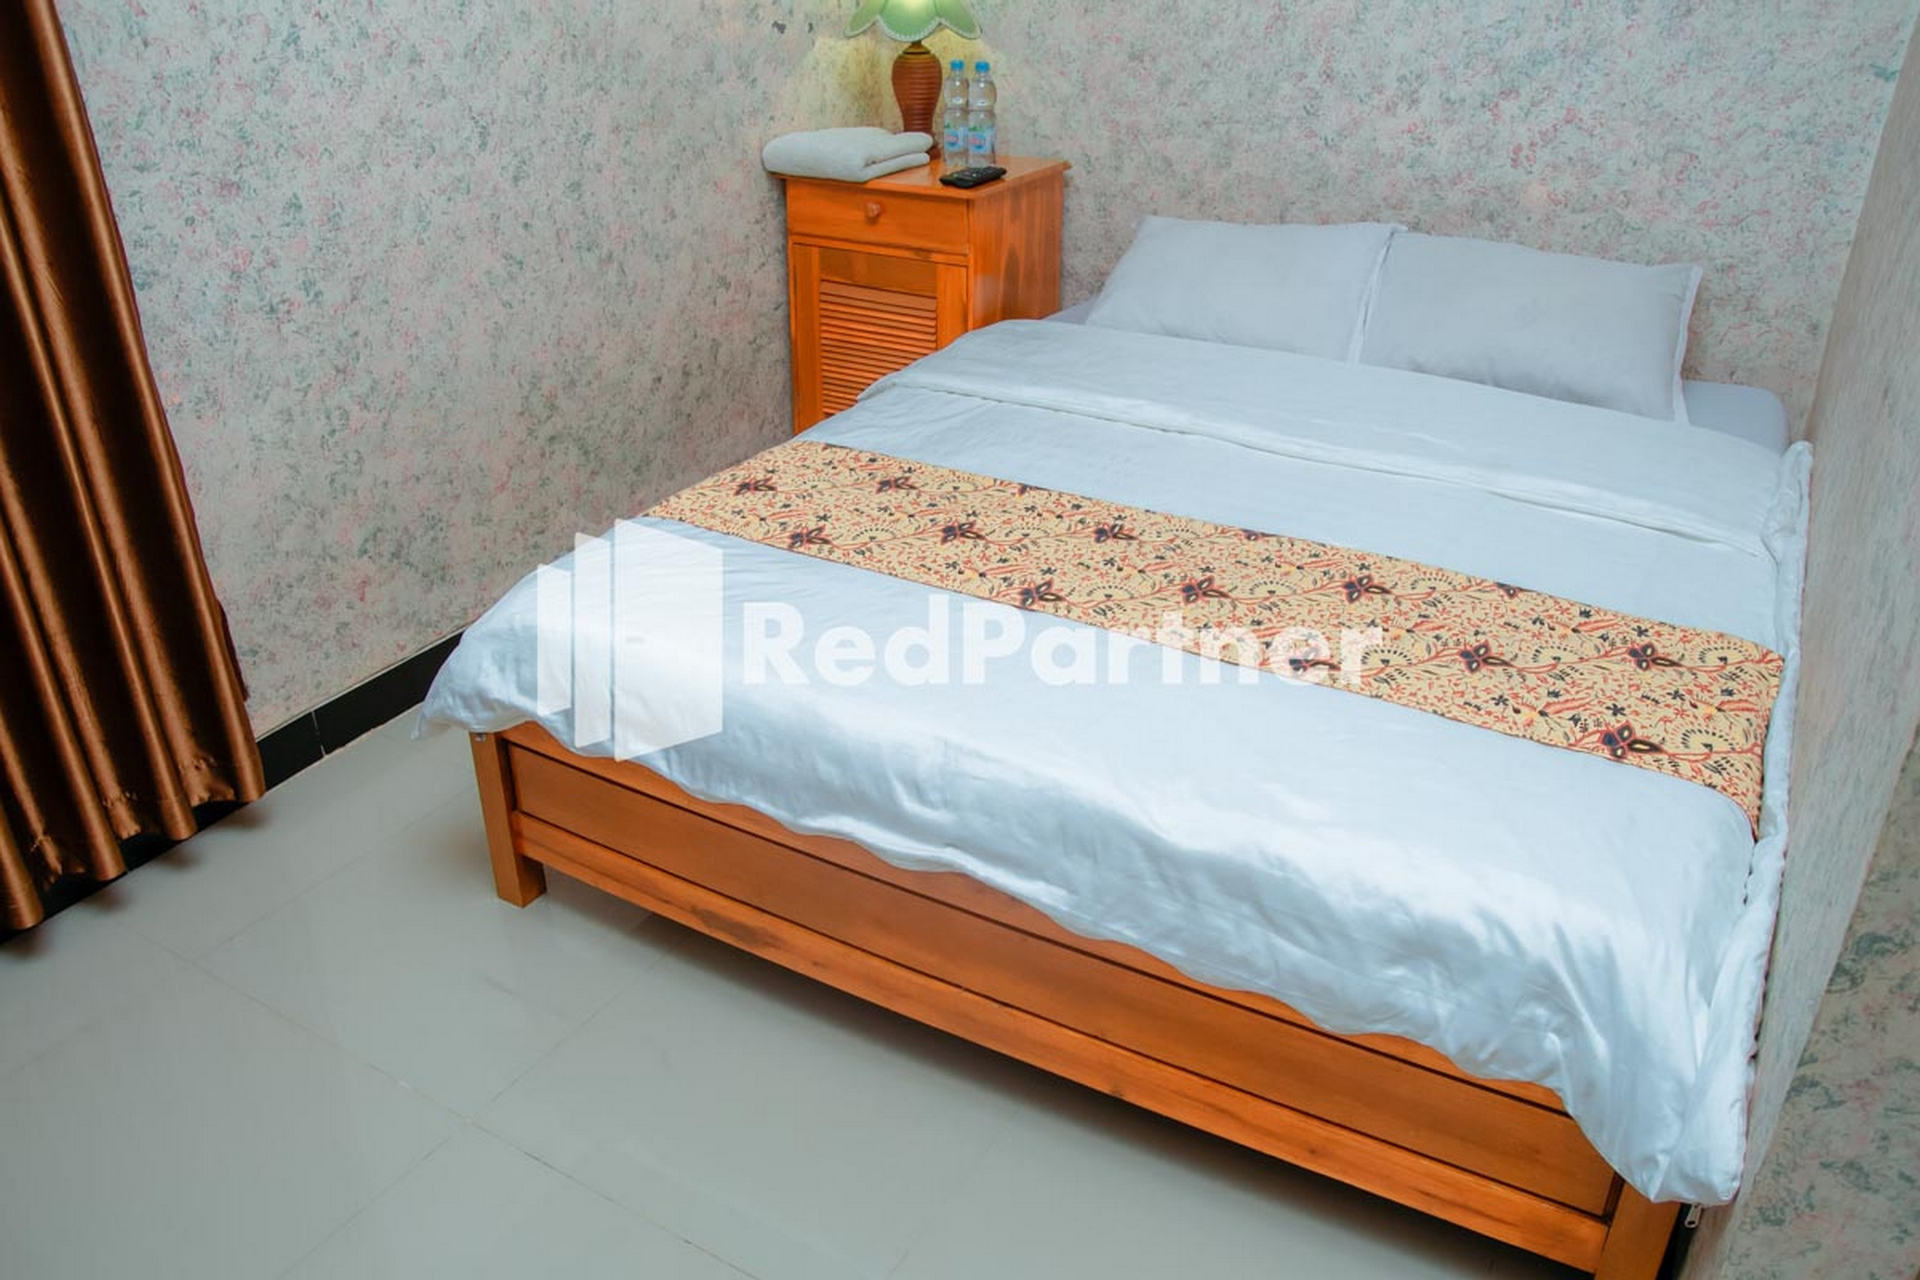 Bedroom 4, Flamboyan Asri Syariah RedPartner near Kampung Inggris Pare, Kediri